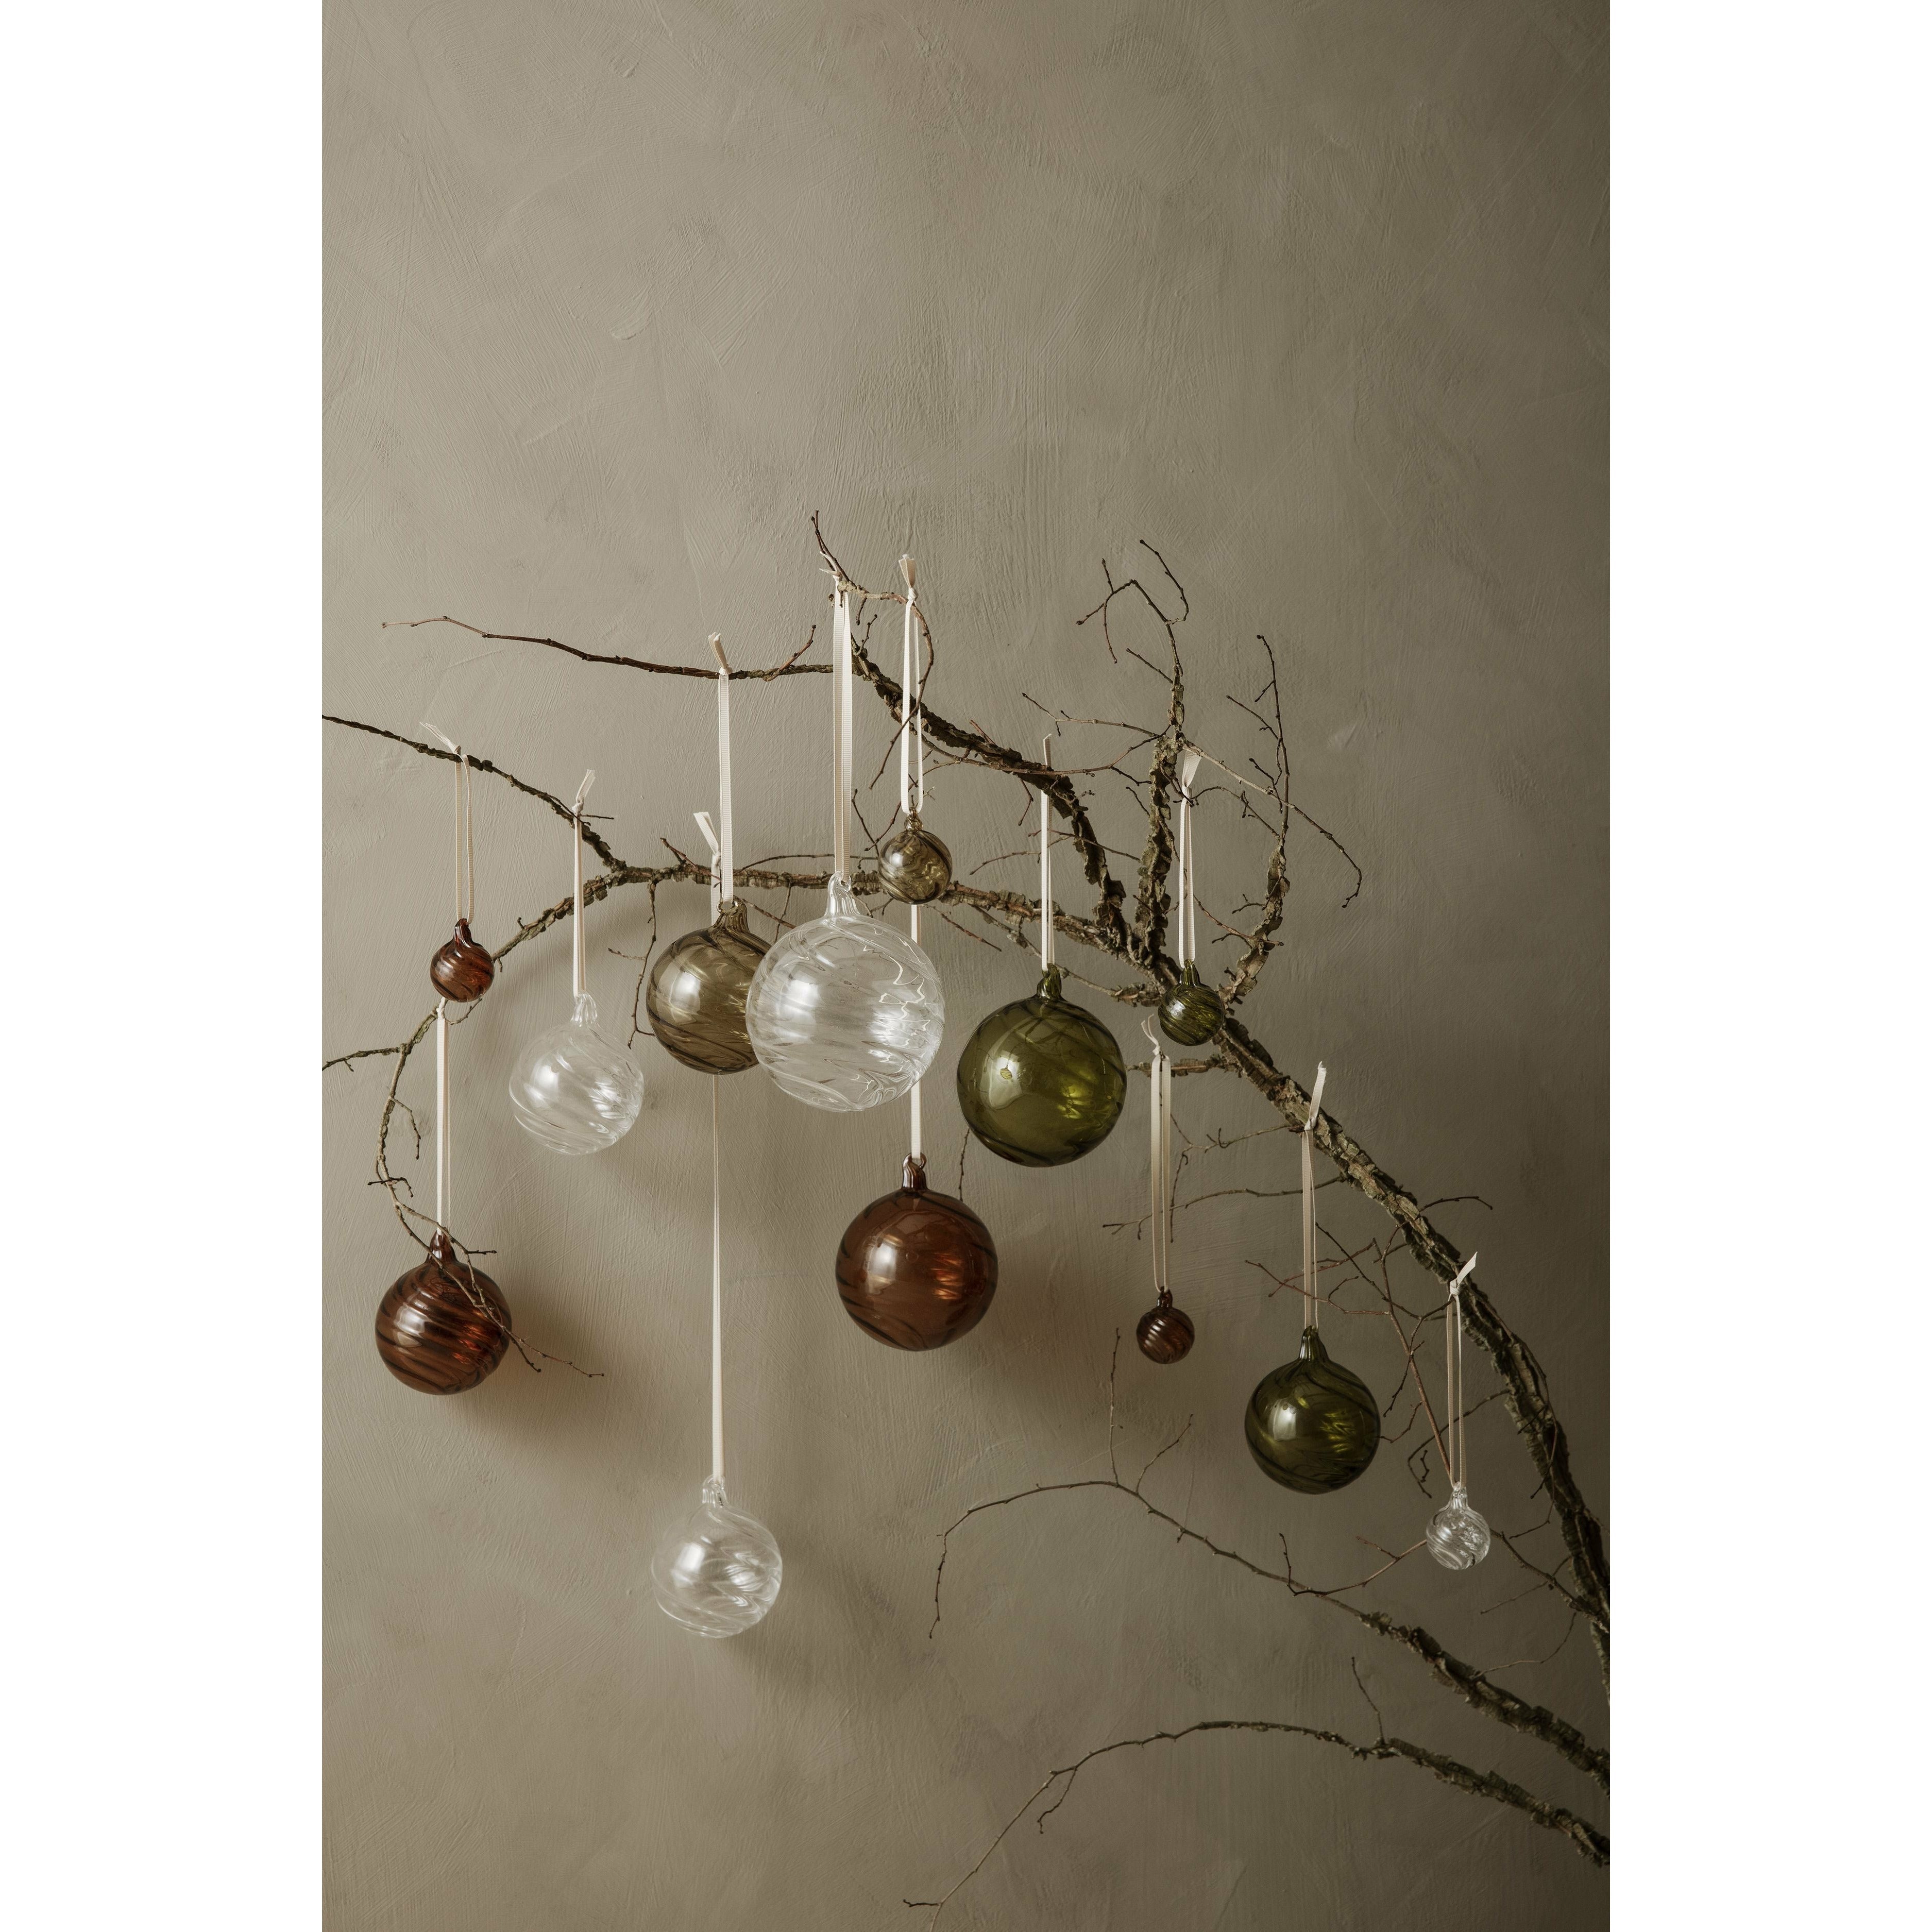 Ferm Living Twirl Ornaments Set Of 4, øx H 10x11 Cm